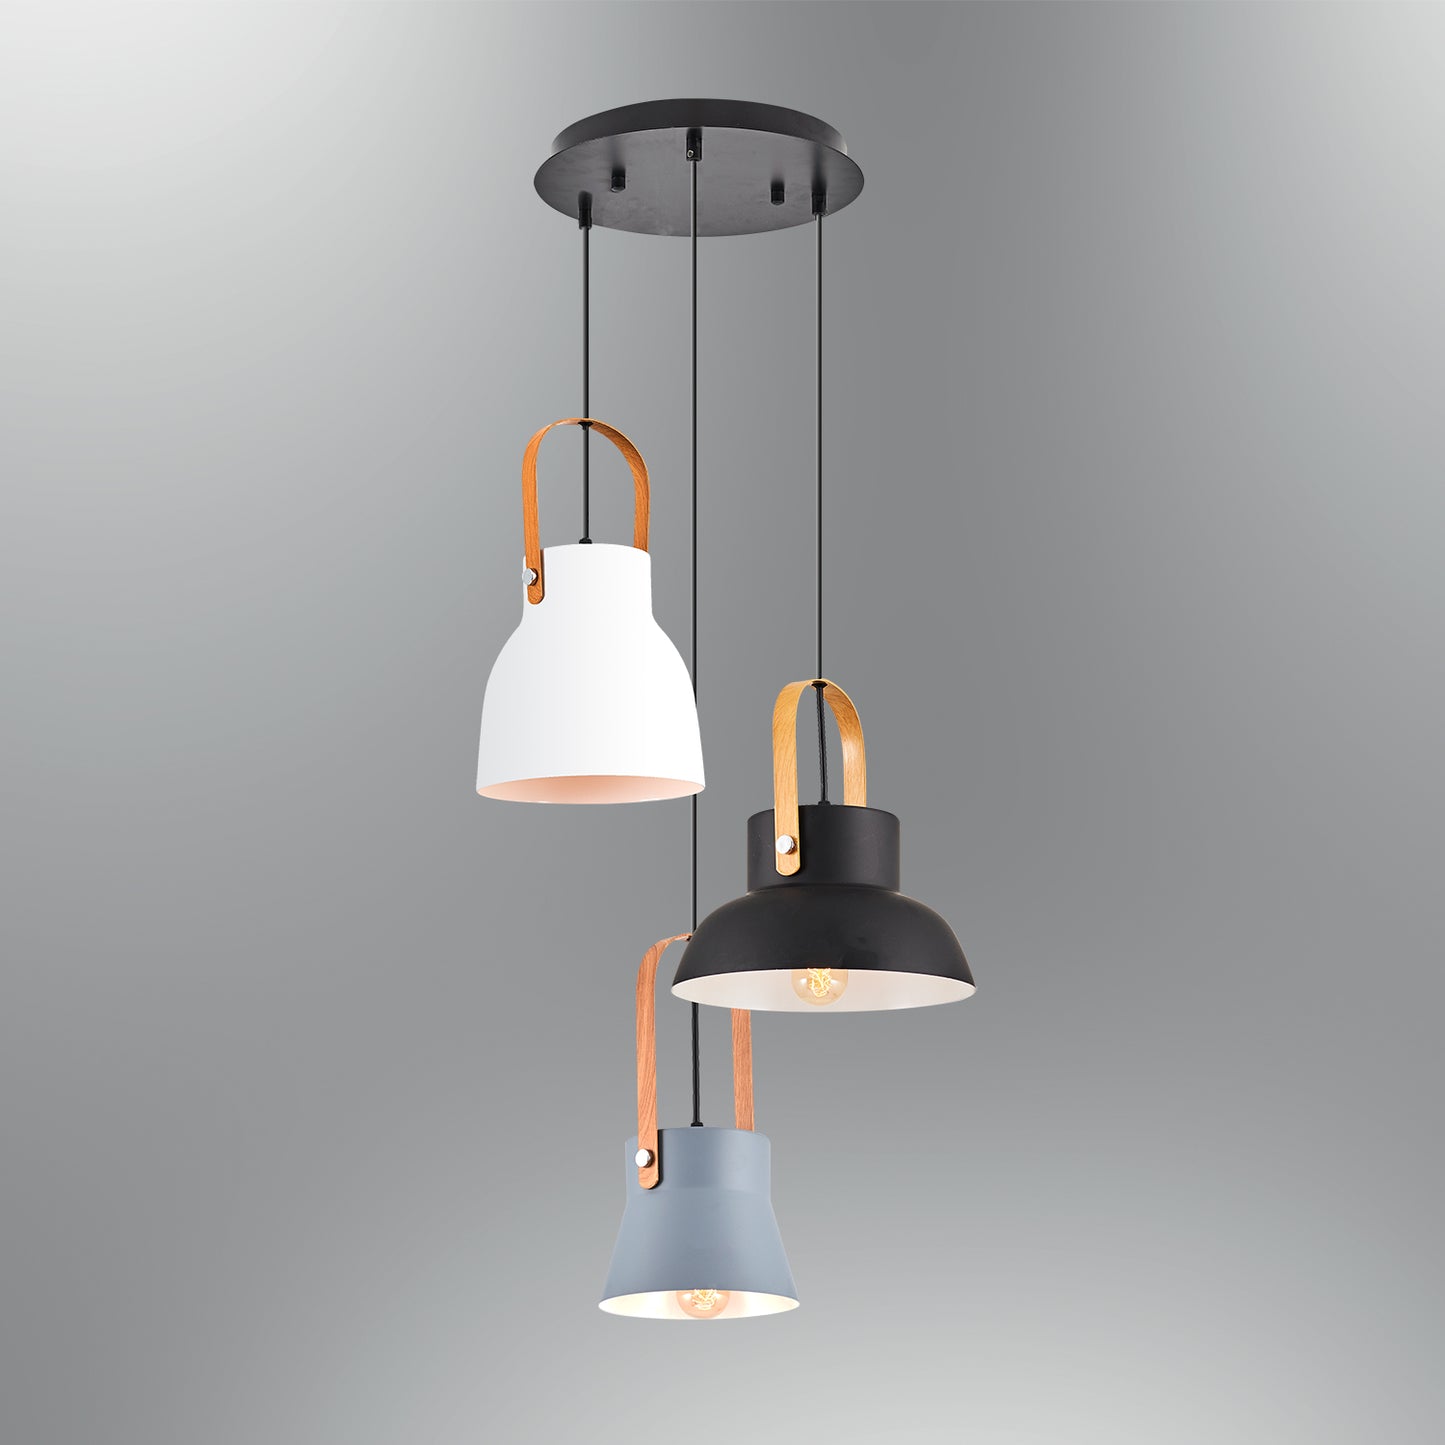 Adomum 5025-3A - Modern Hanglamp